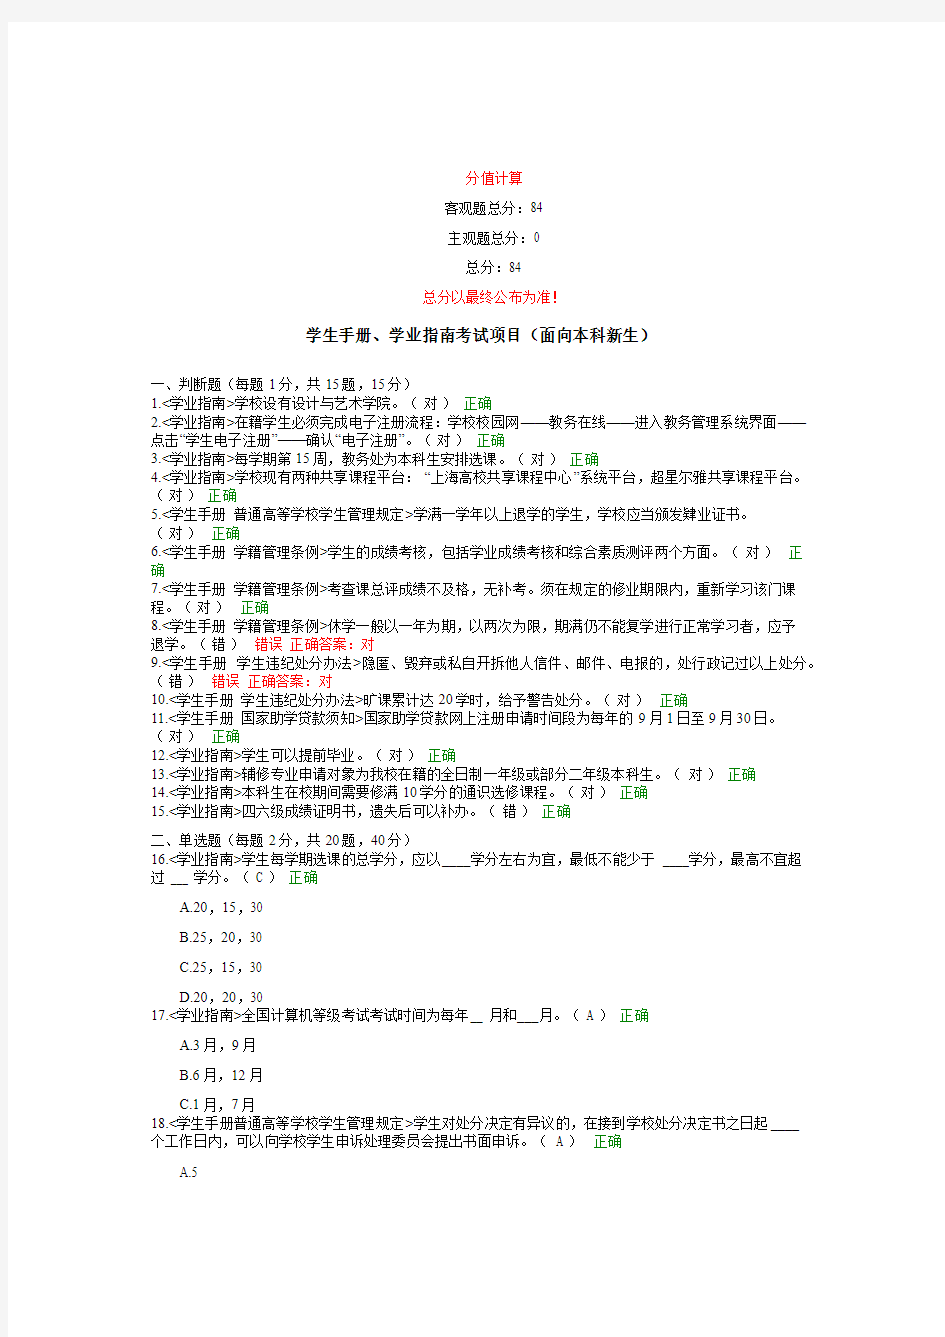 上海电机学院学生手册学业指南网上测试题答案